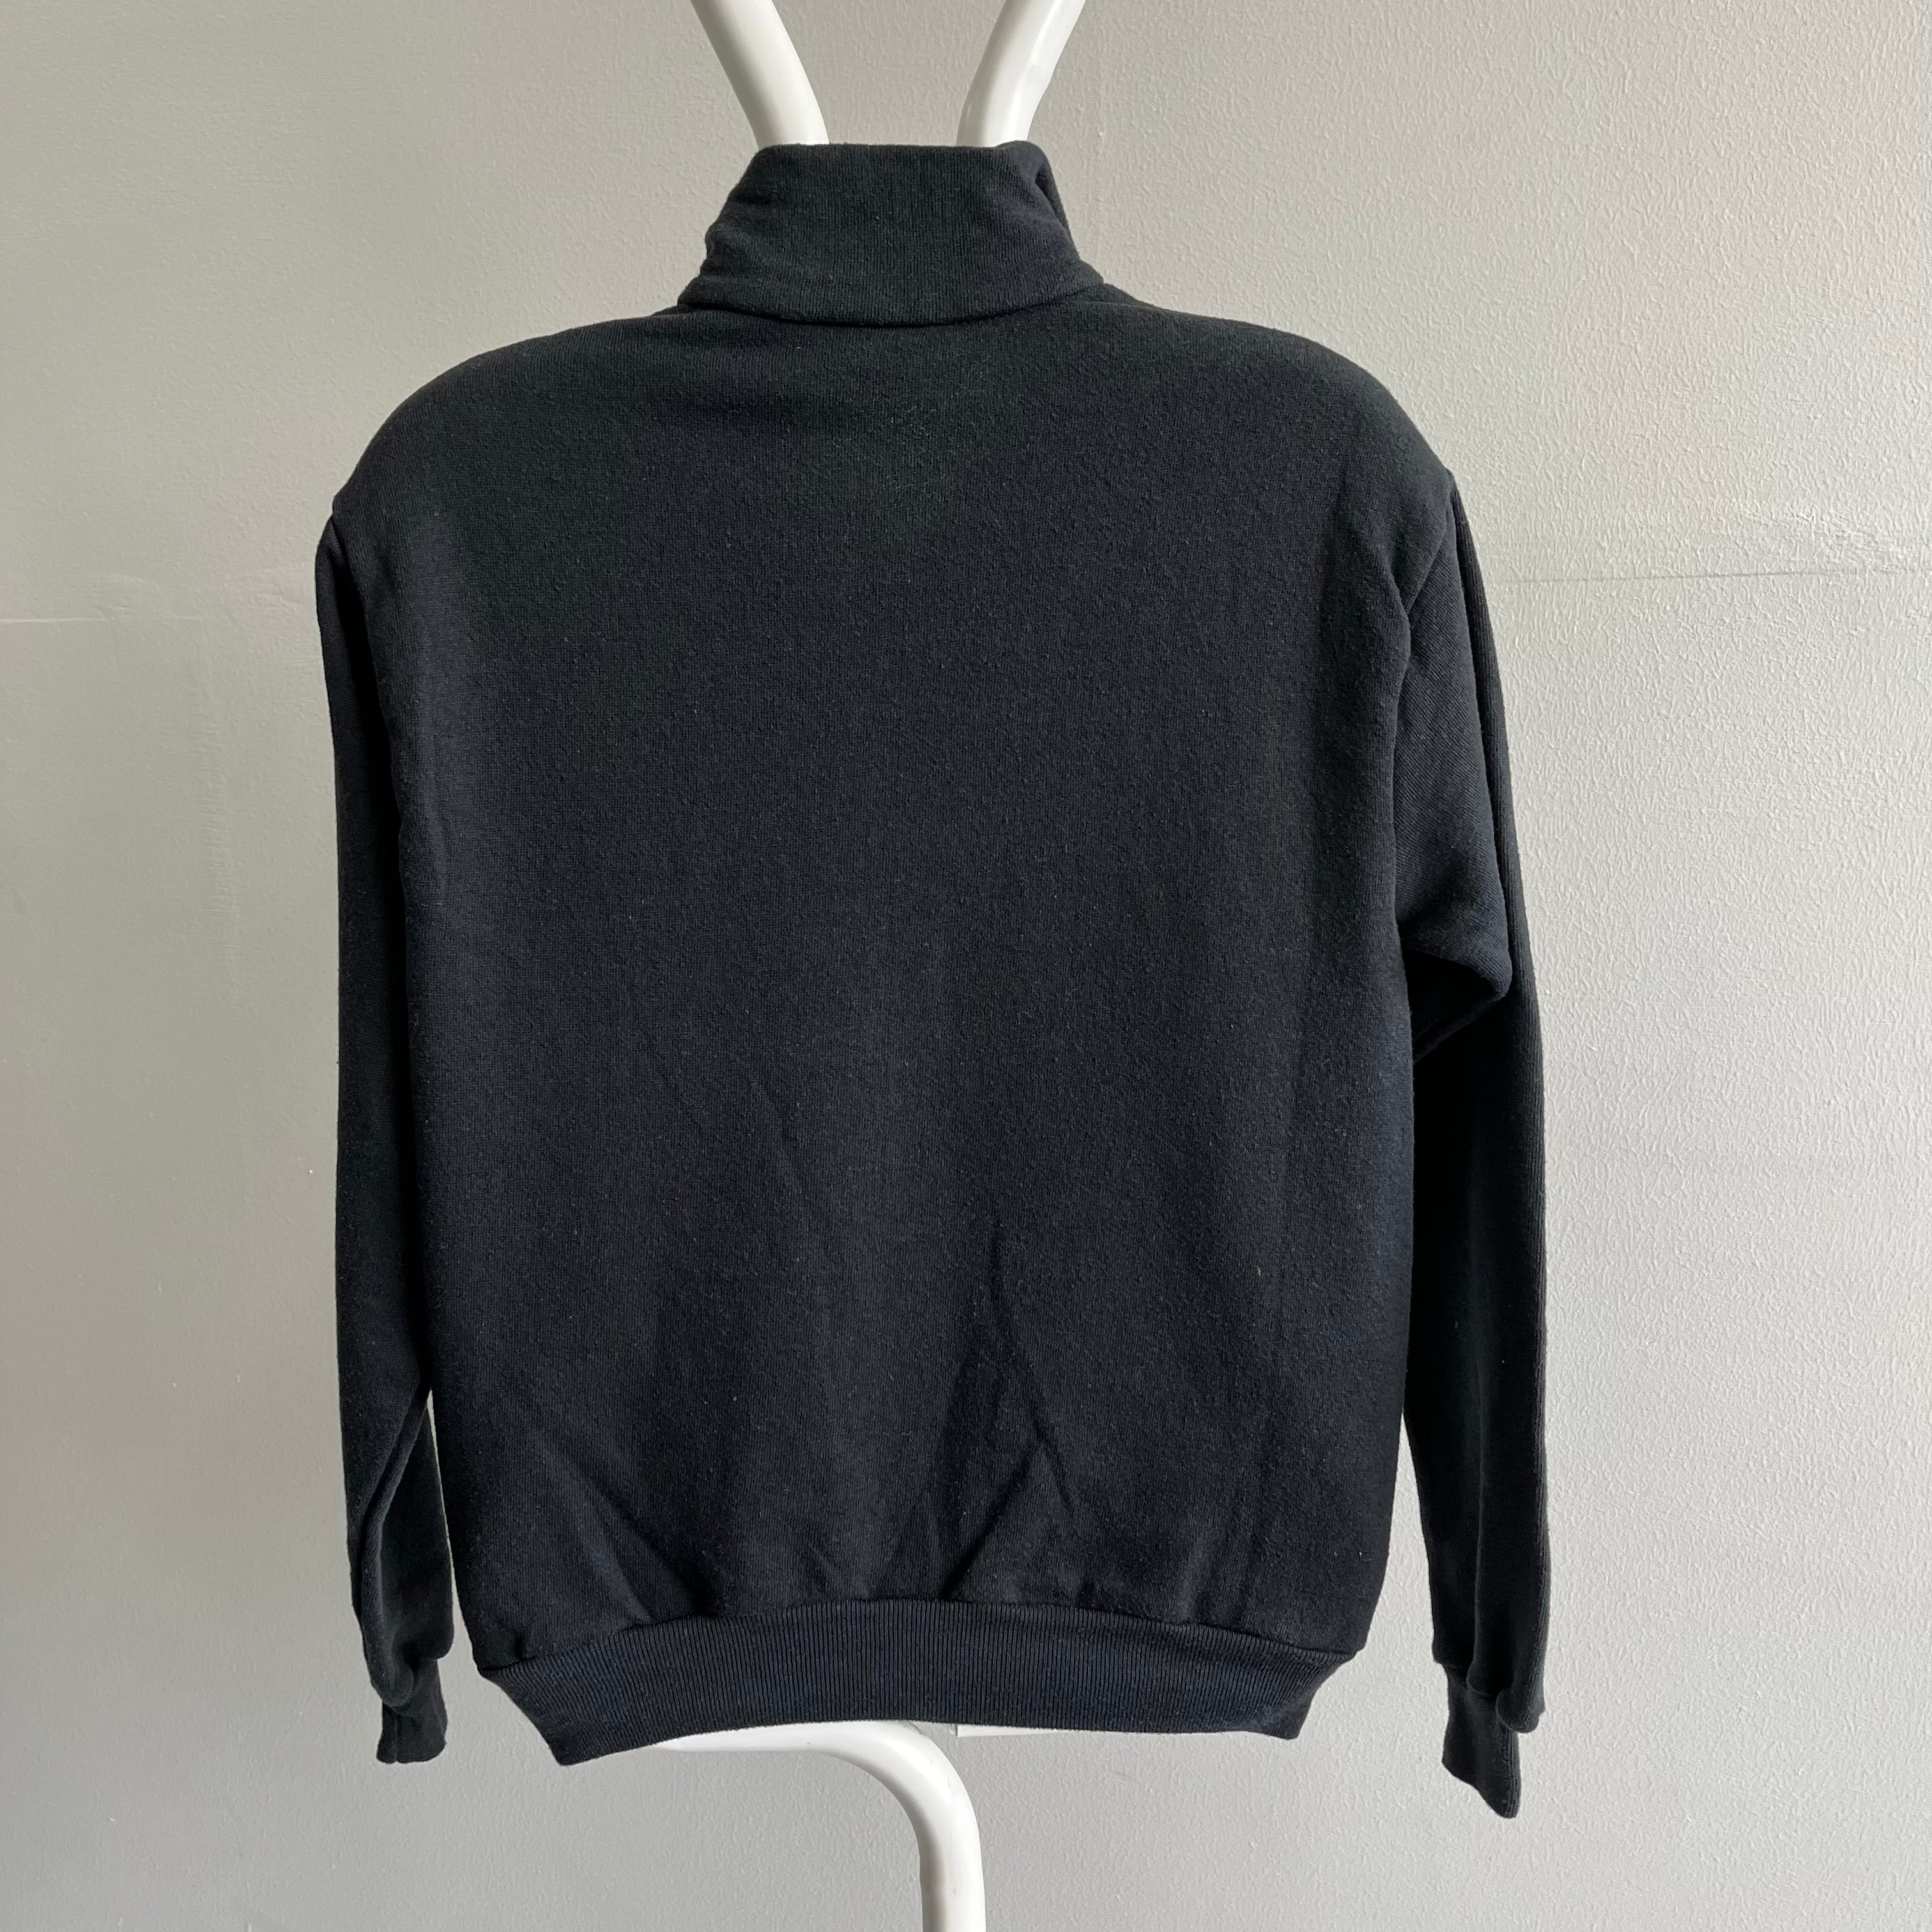 1980s 1/4 Zip Black and White Sweatshirt - RAD